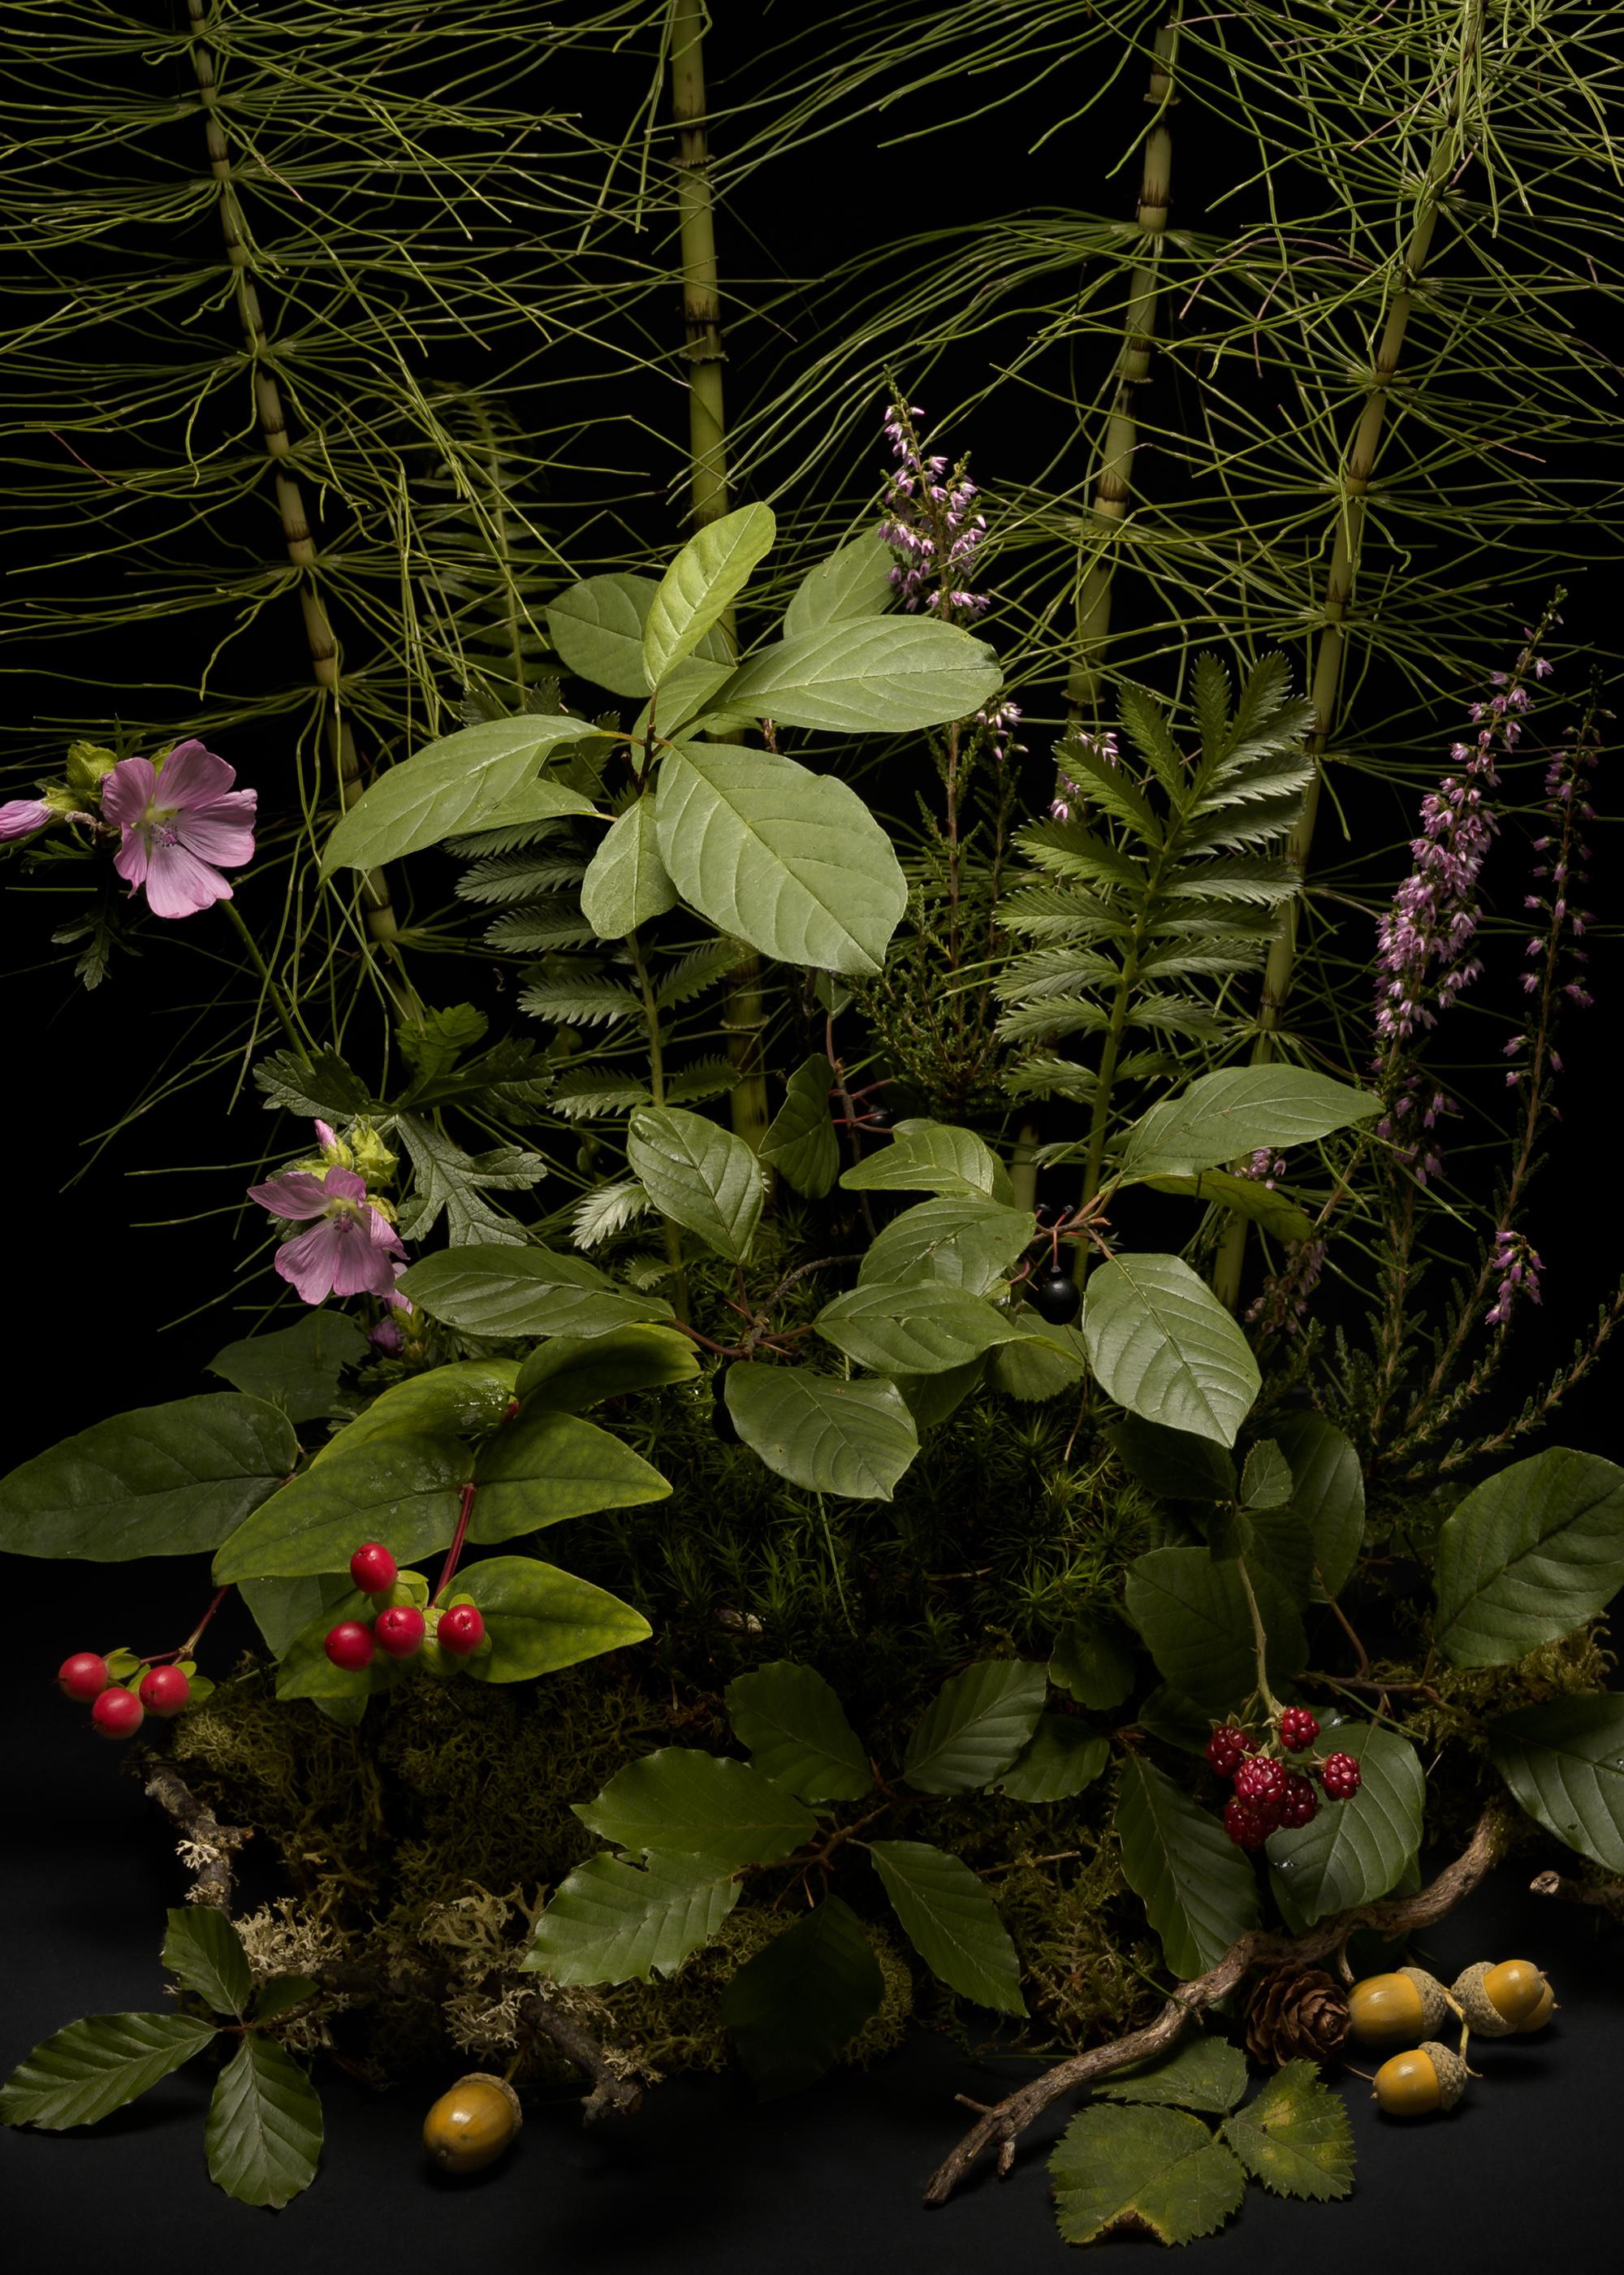 Dunkle Blume #, Schwalbenschwanz, Ein Blumenarrangement aus wilden Pflanzen und Blumen – Print von Jasper Goodall